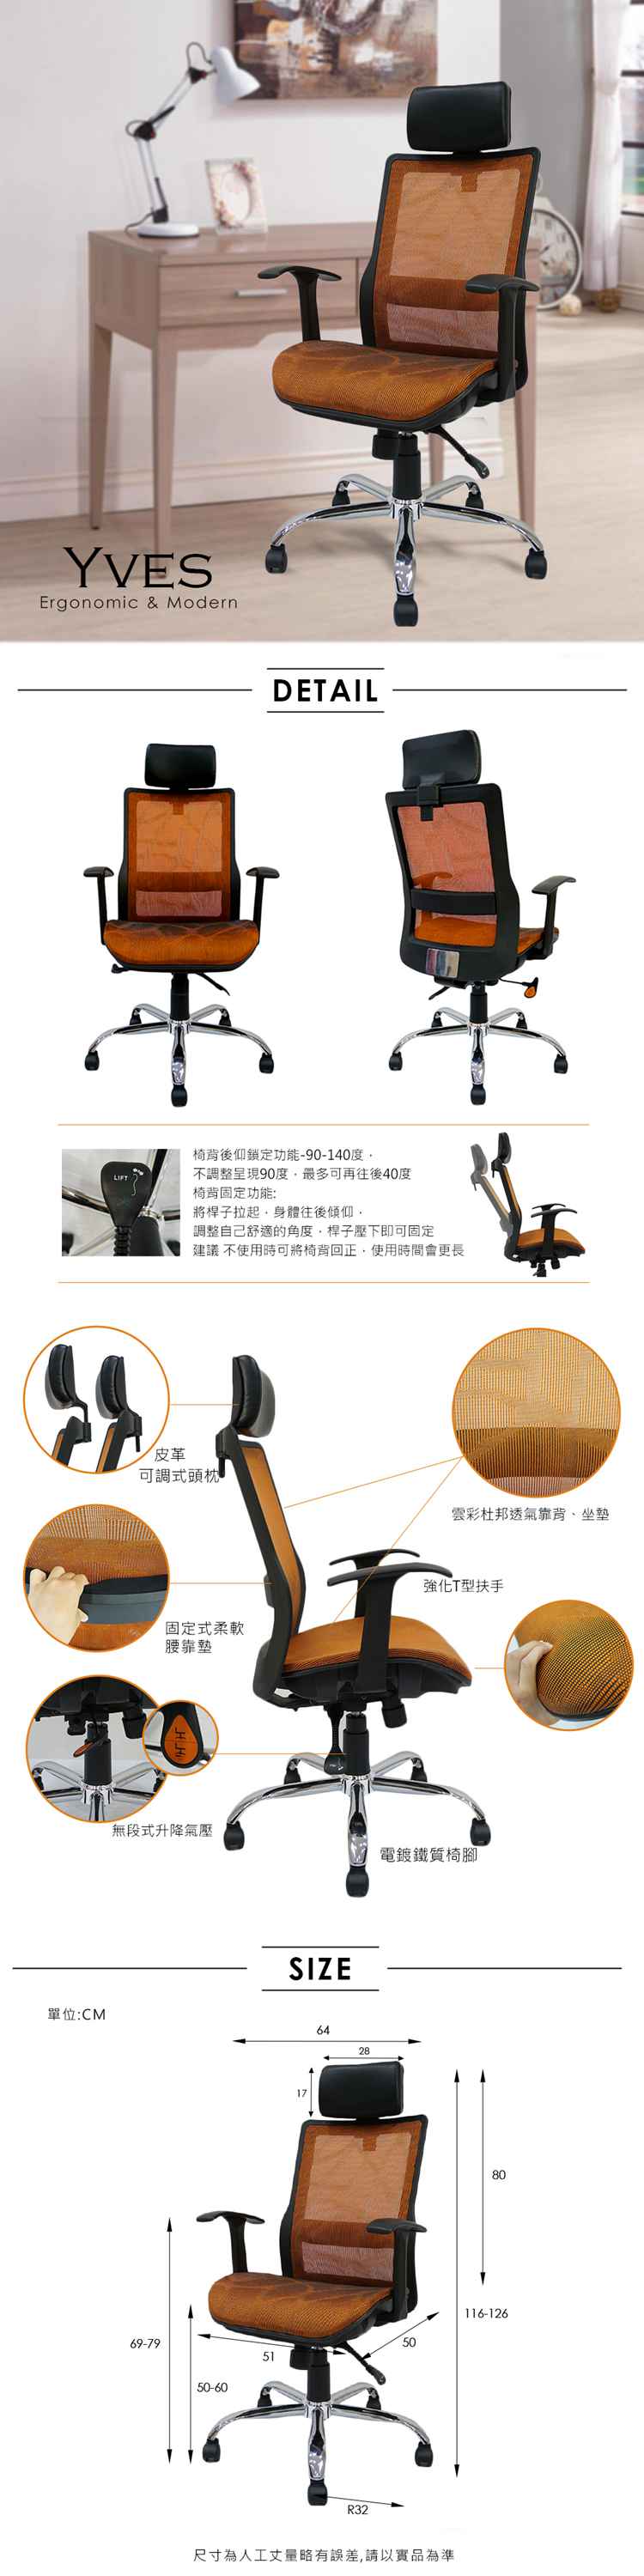 辦公椅/電腦椅 Yves頭靠透氣網布辦公椅/電腦椅【obis】